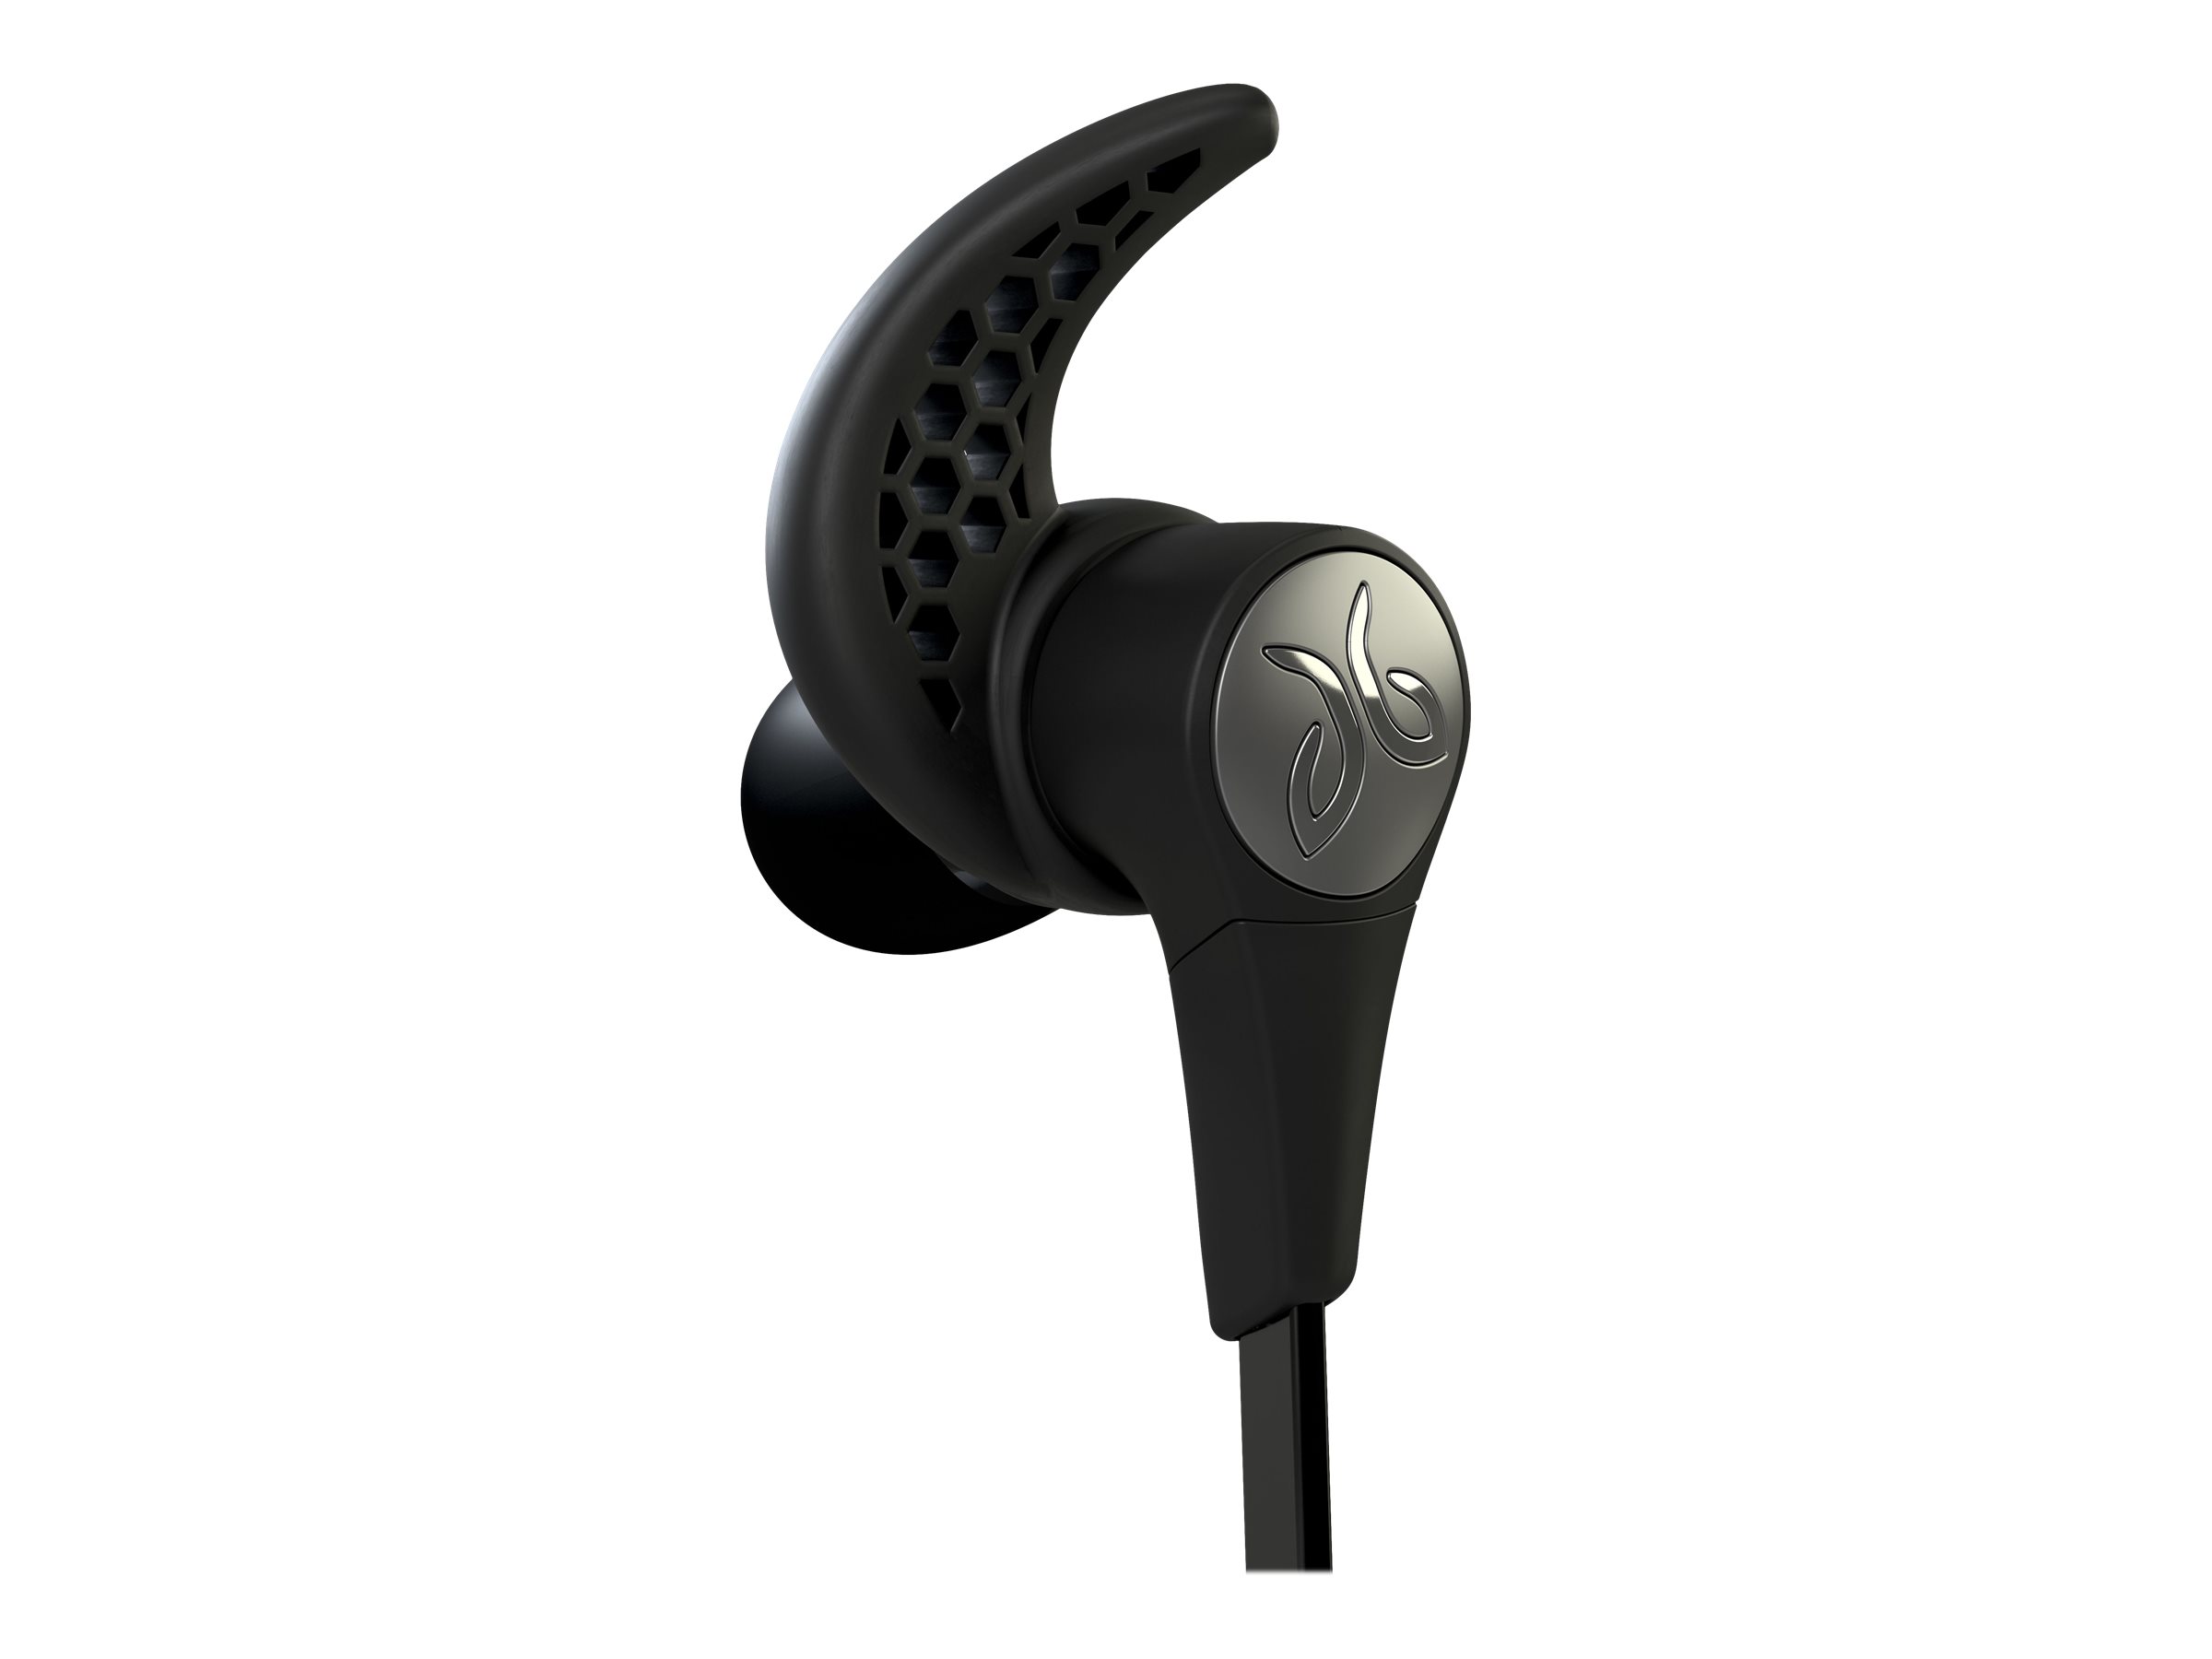 Jaybird 985-000580 X3 Sport Bluetooth Earbuds, Blackout - image 4 of 4